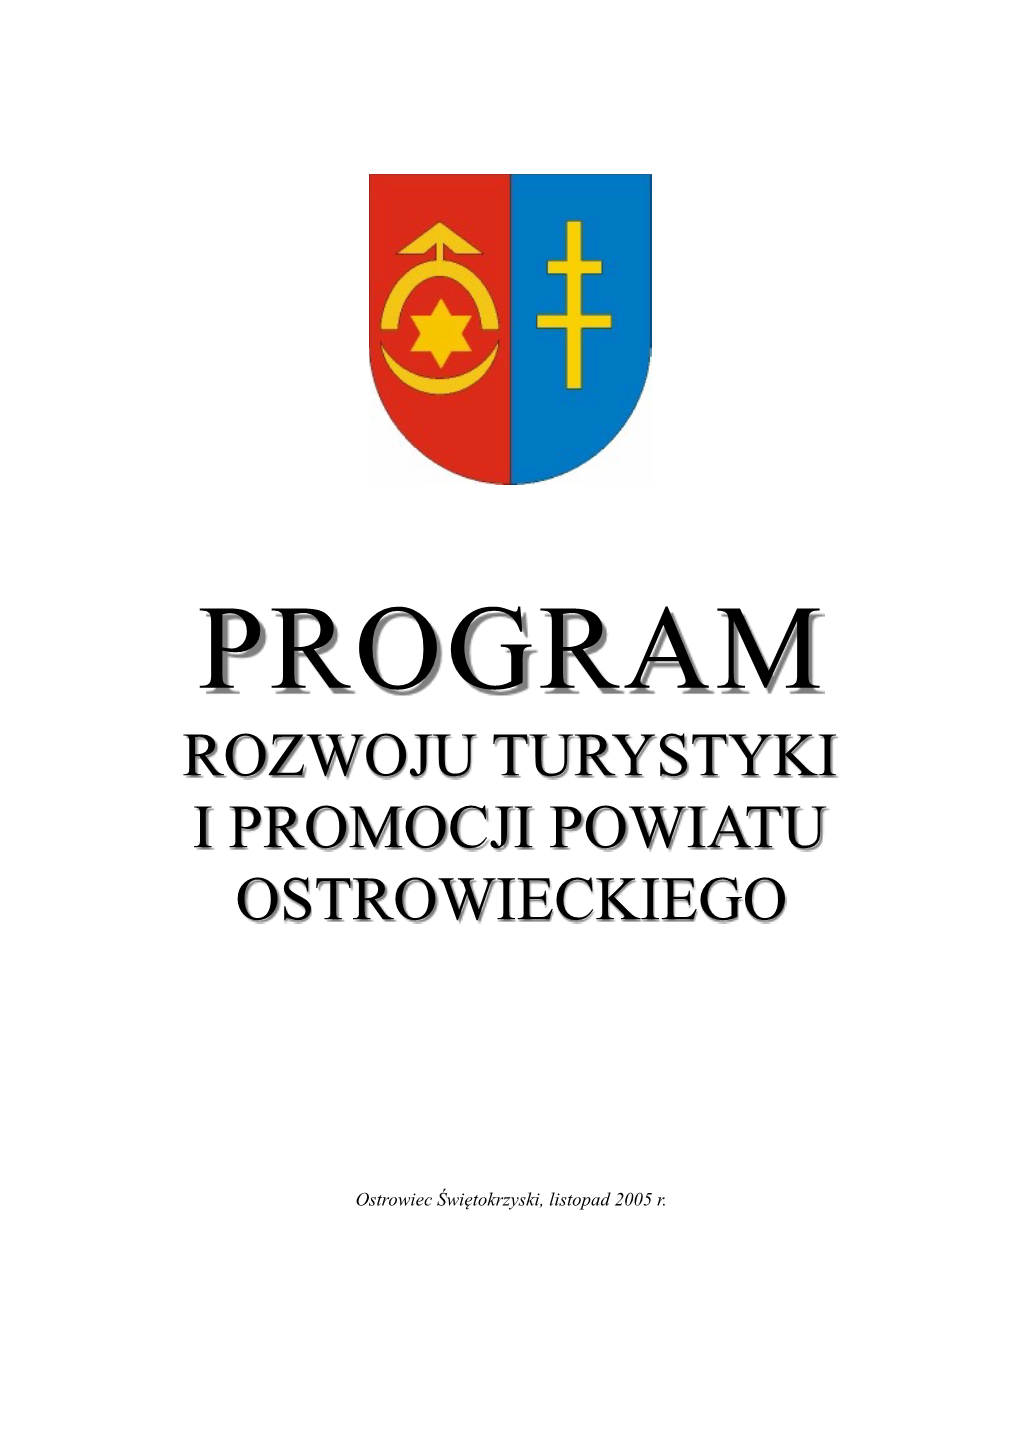 Program Rozwoju Turystyki I Promocji Powiatu Ostrowieckiego